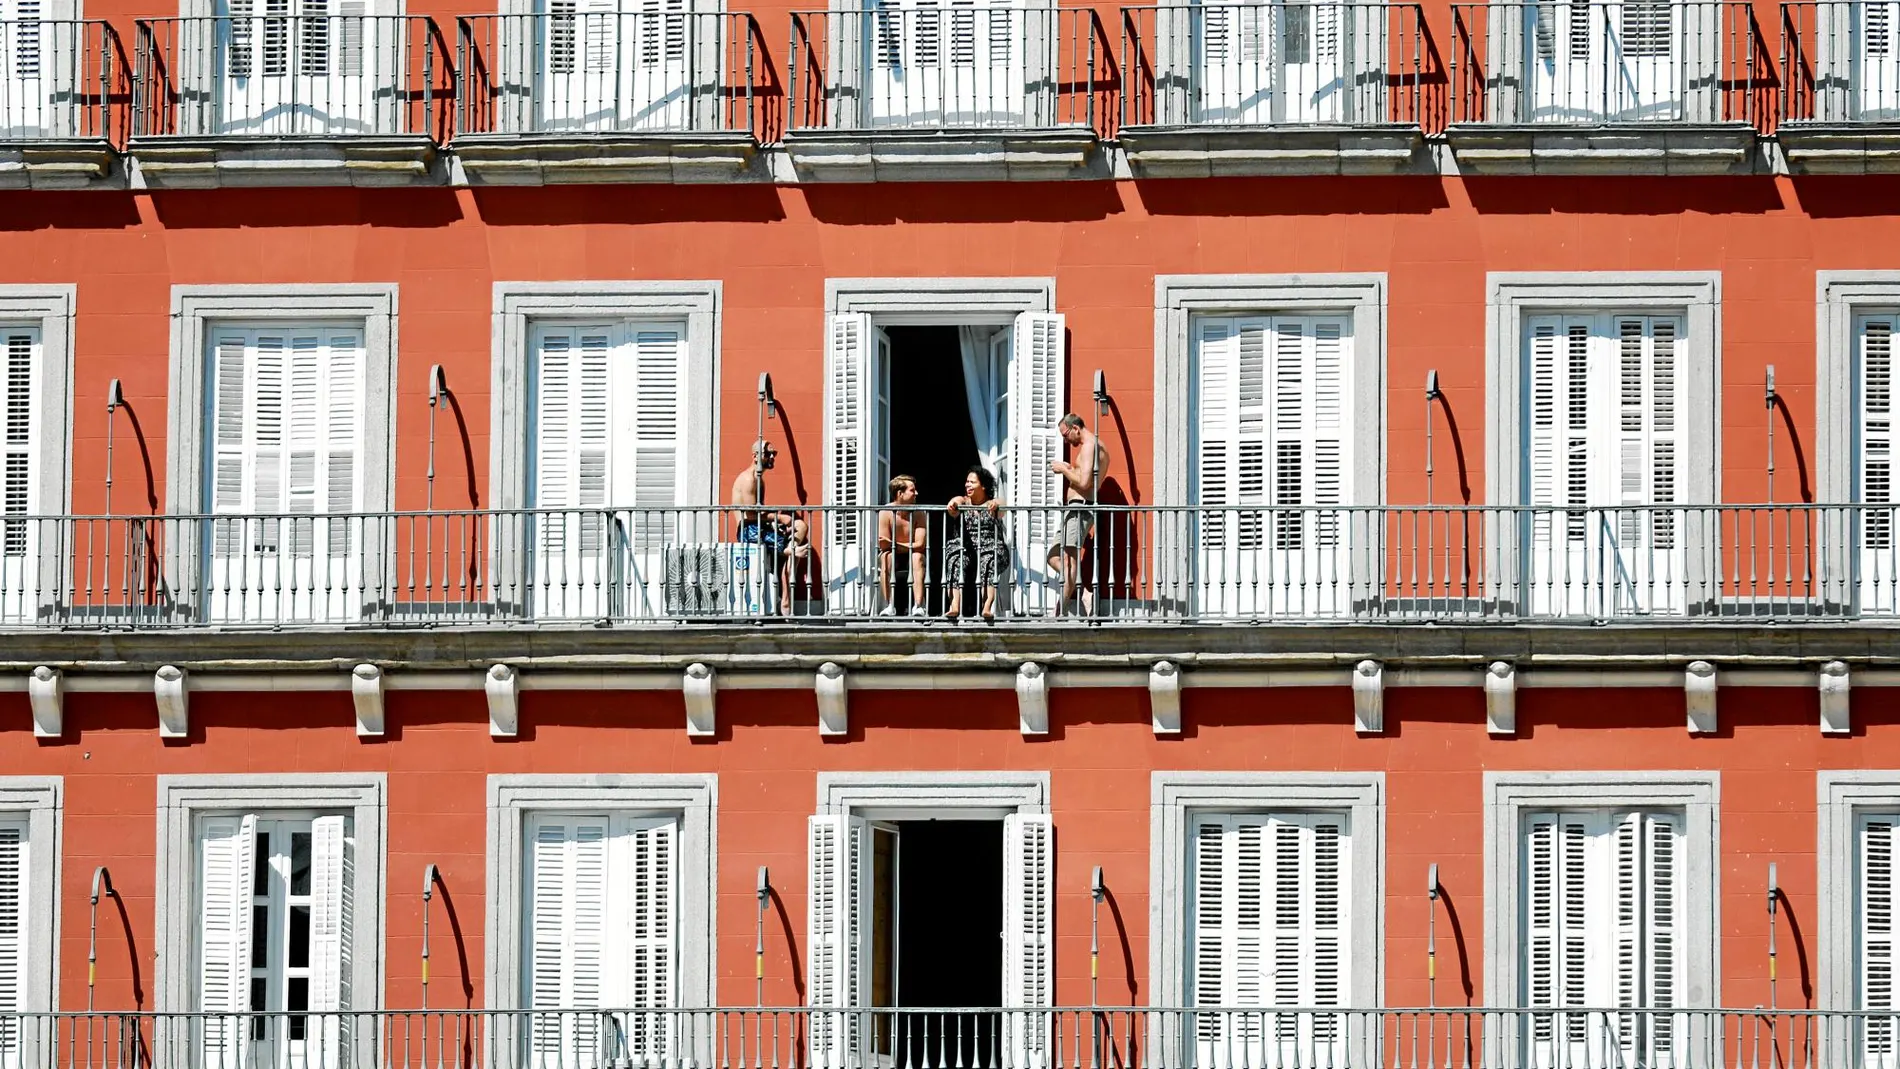 Madrid rozó los 10 millones de turistas en los últimos doce meses, lo que ha disparado la oferta de pisos turísticos. Foto: Jesús G. Feria